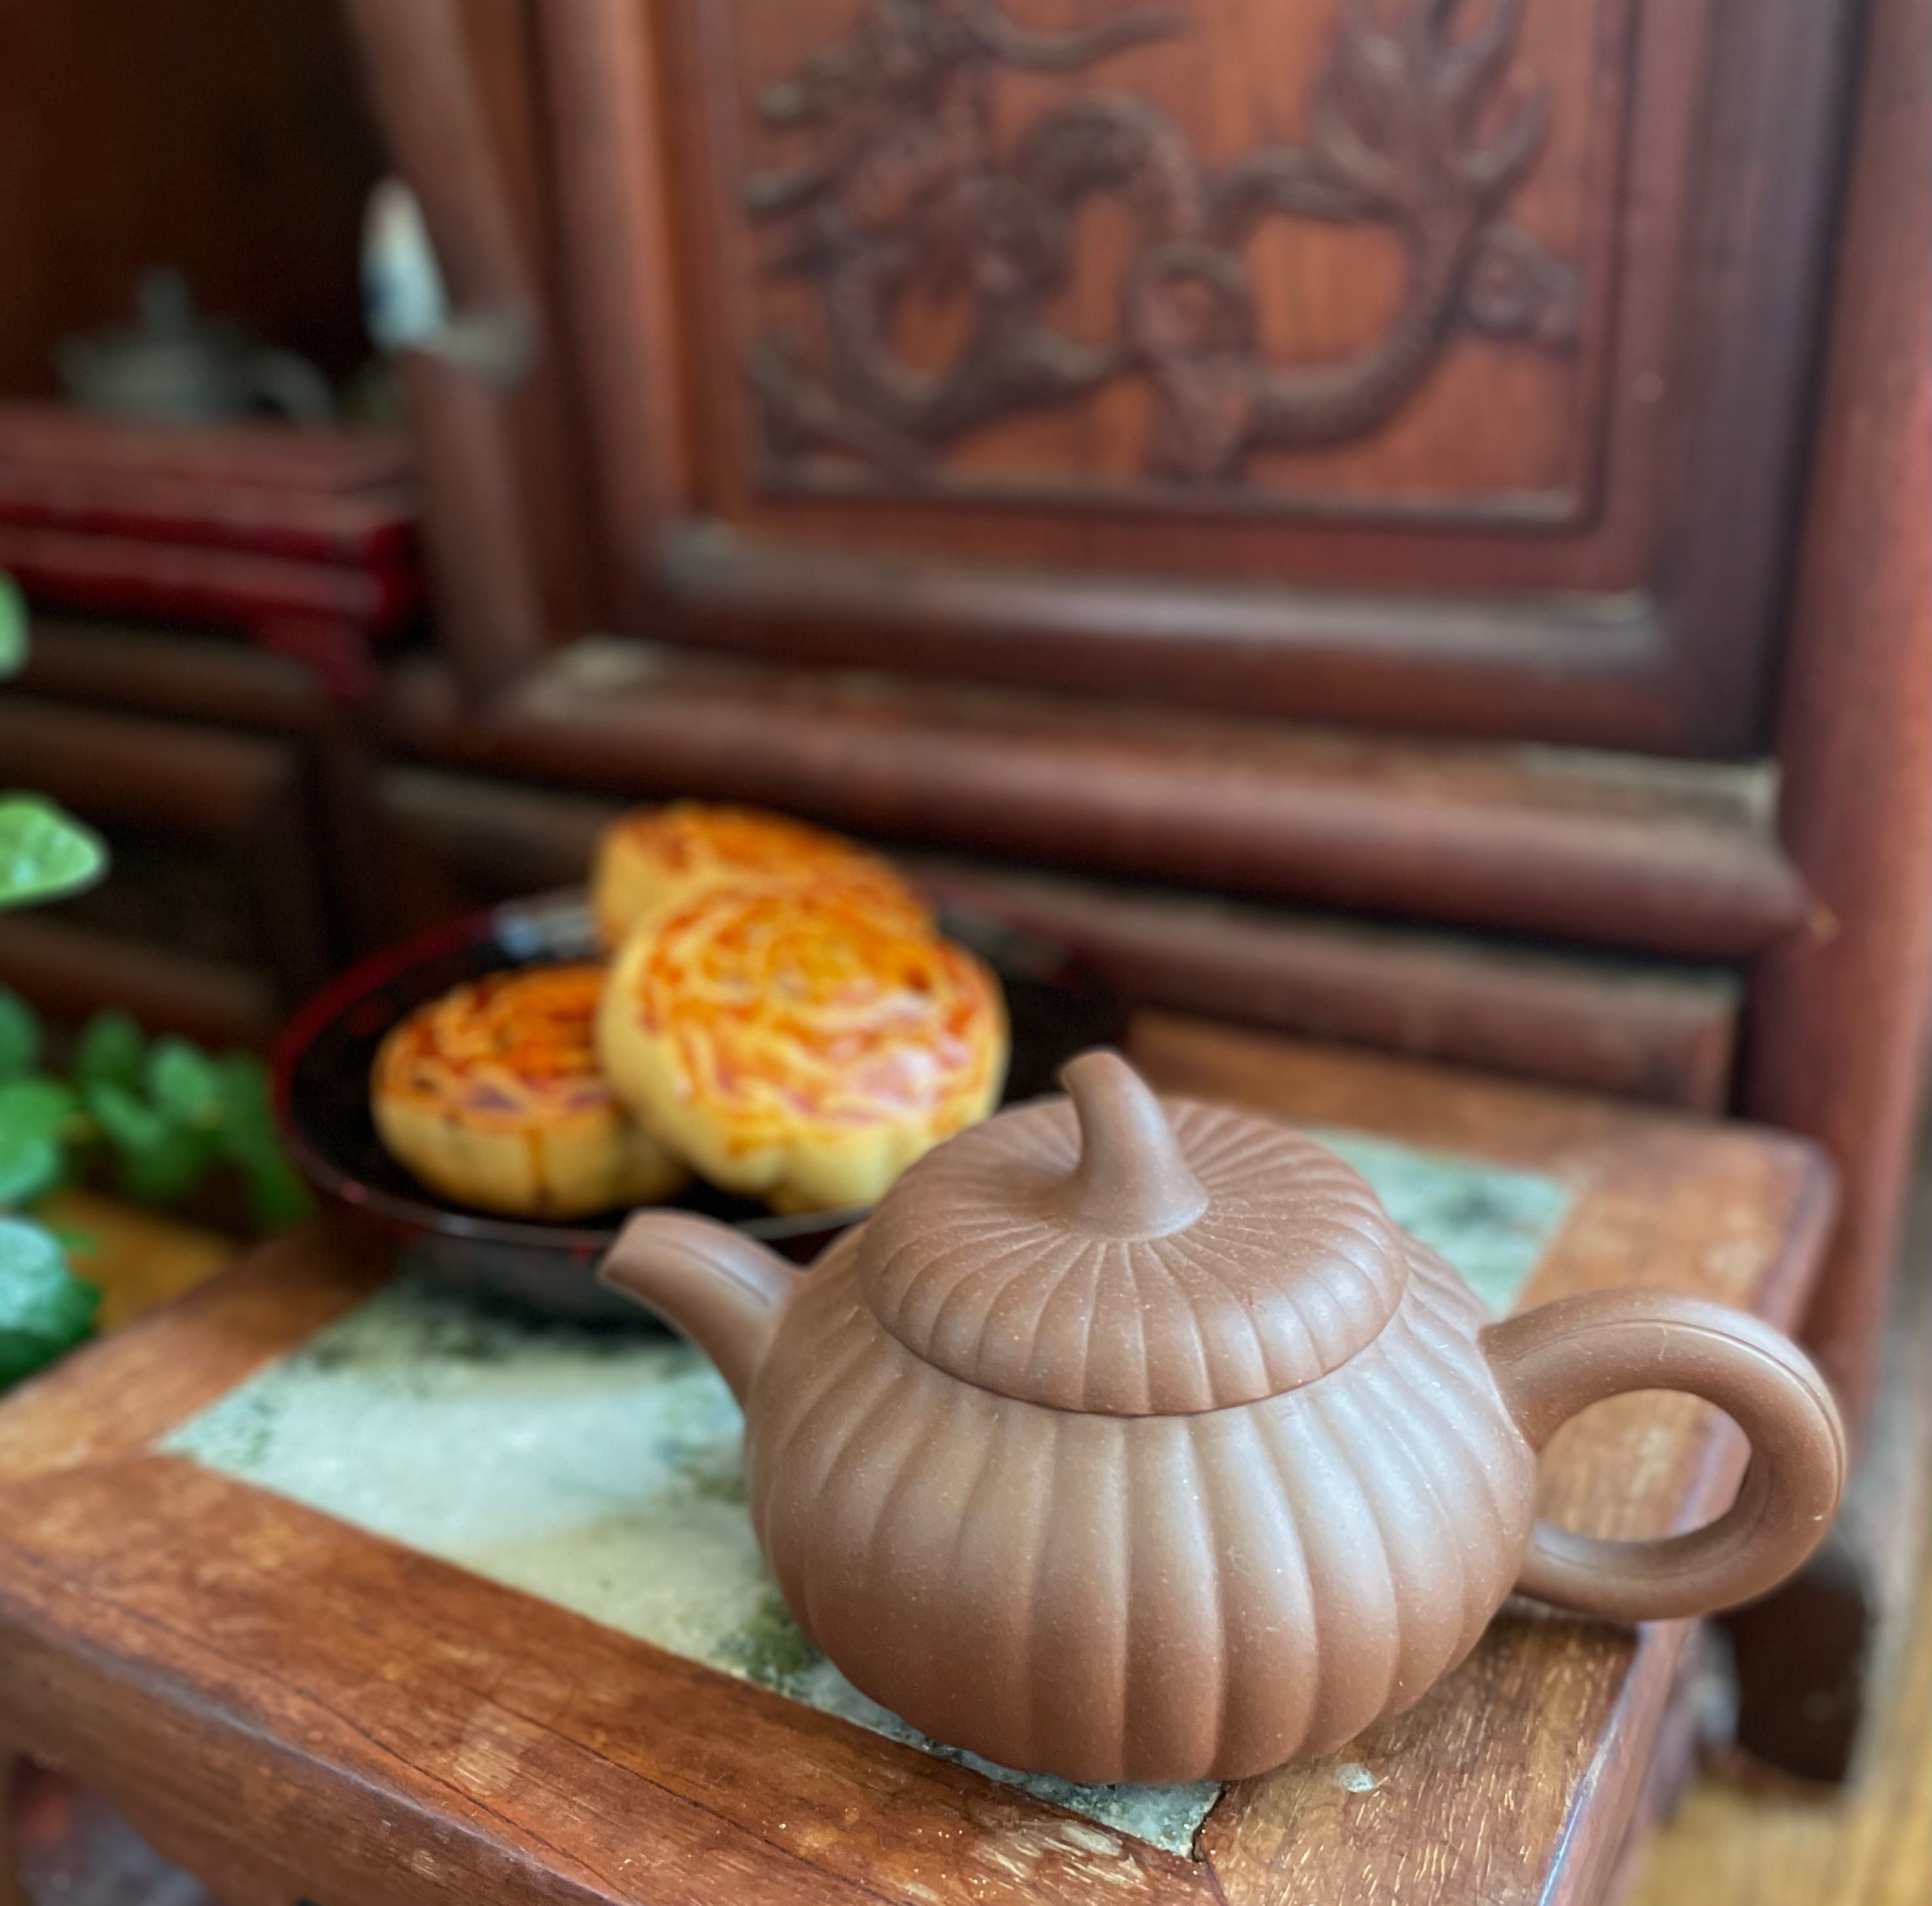 中国茶器 | 方龍 アクセサリーとシノワズリ雑貨